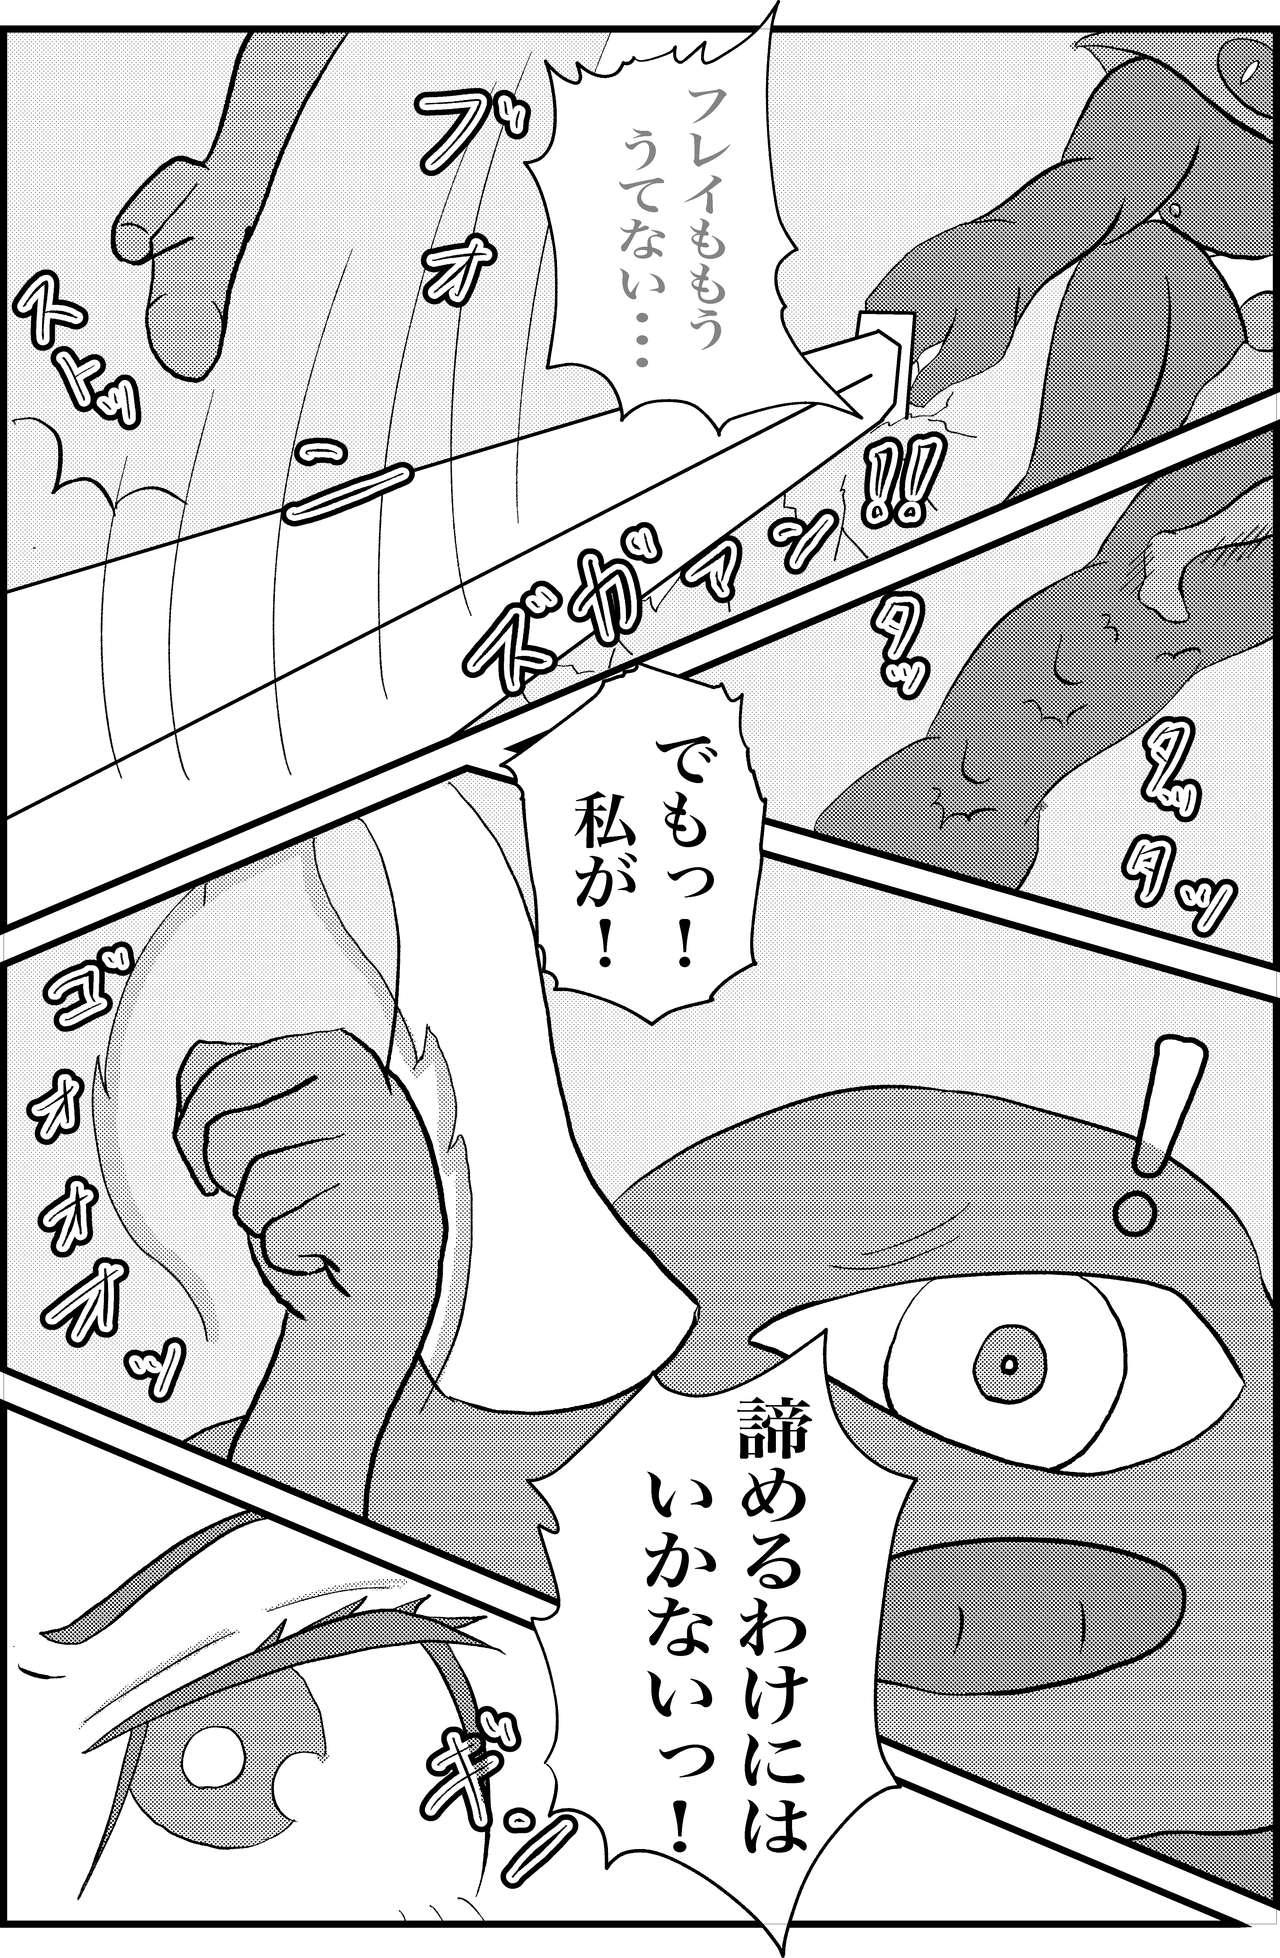 Orgasms Kokoro no Kaitoudan VS Jakuten Debuff Kusuguri Jigoku - Persona 5 Nylons - Page 5